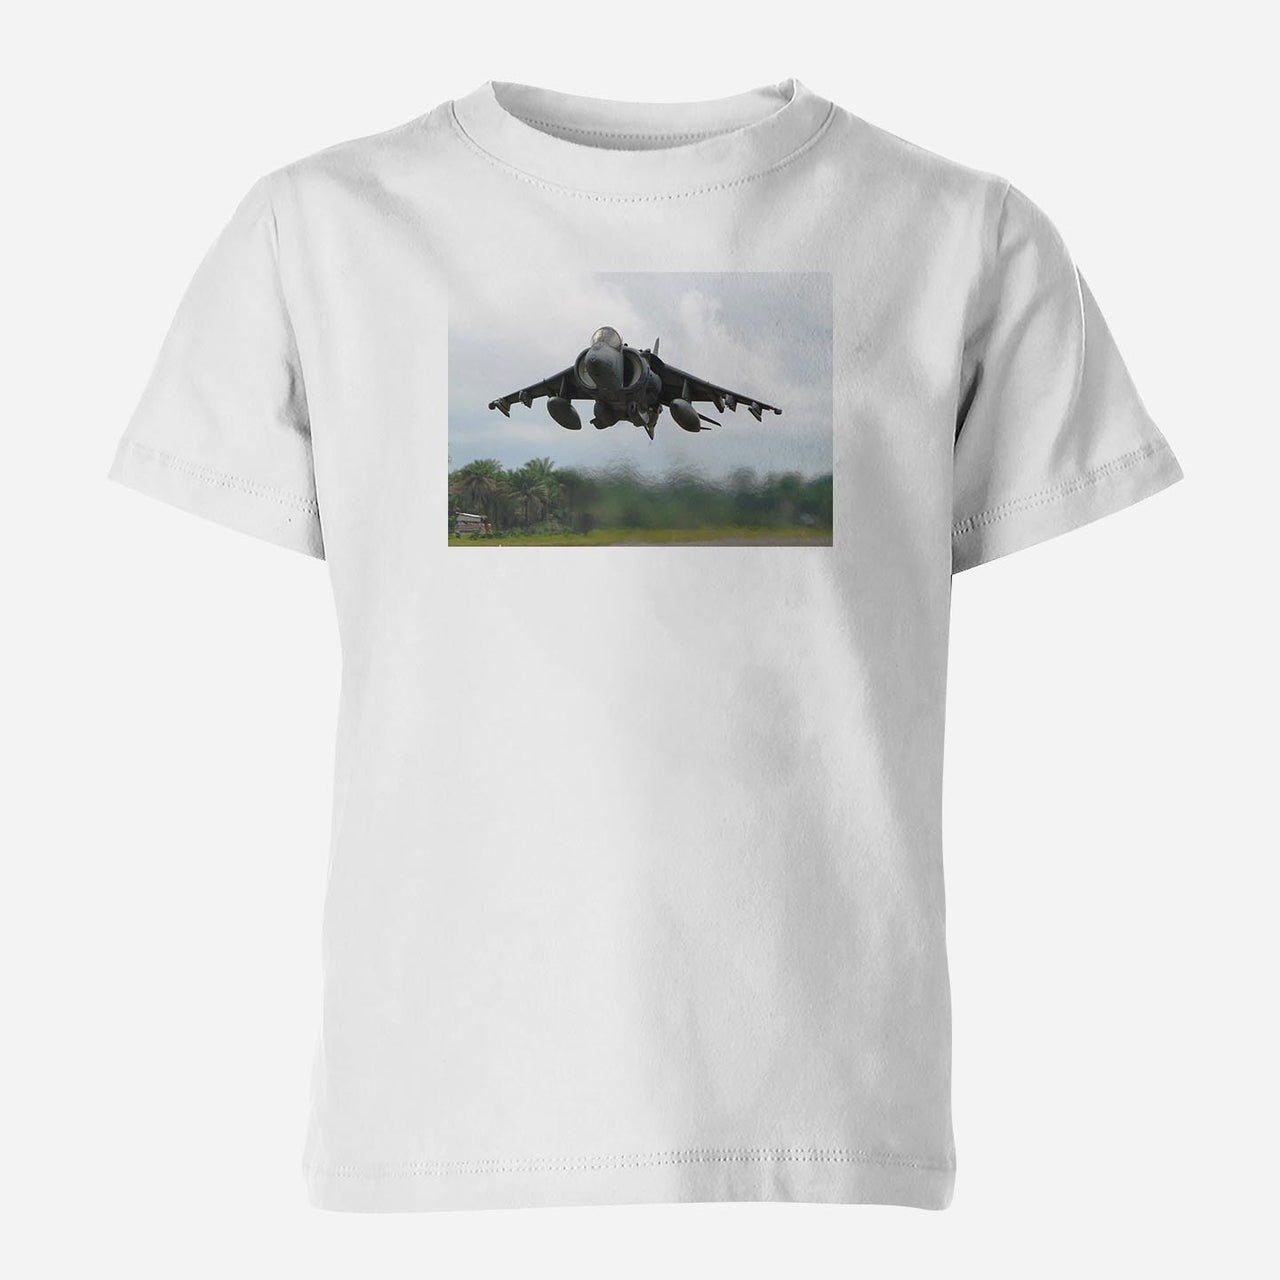 Departing Super Fighter Jet Designed Children T-Shirts